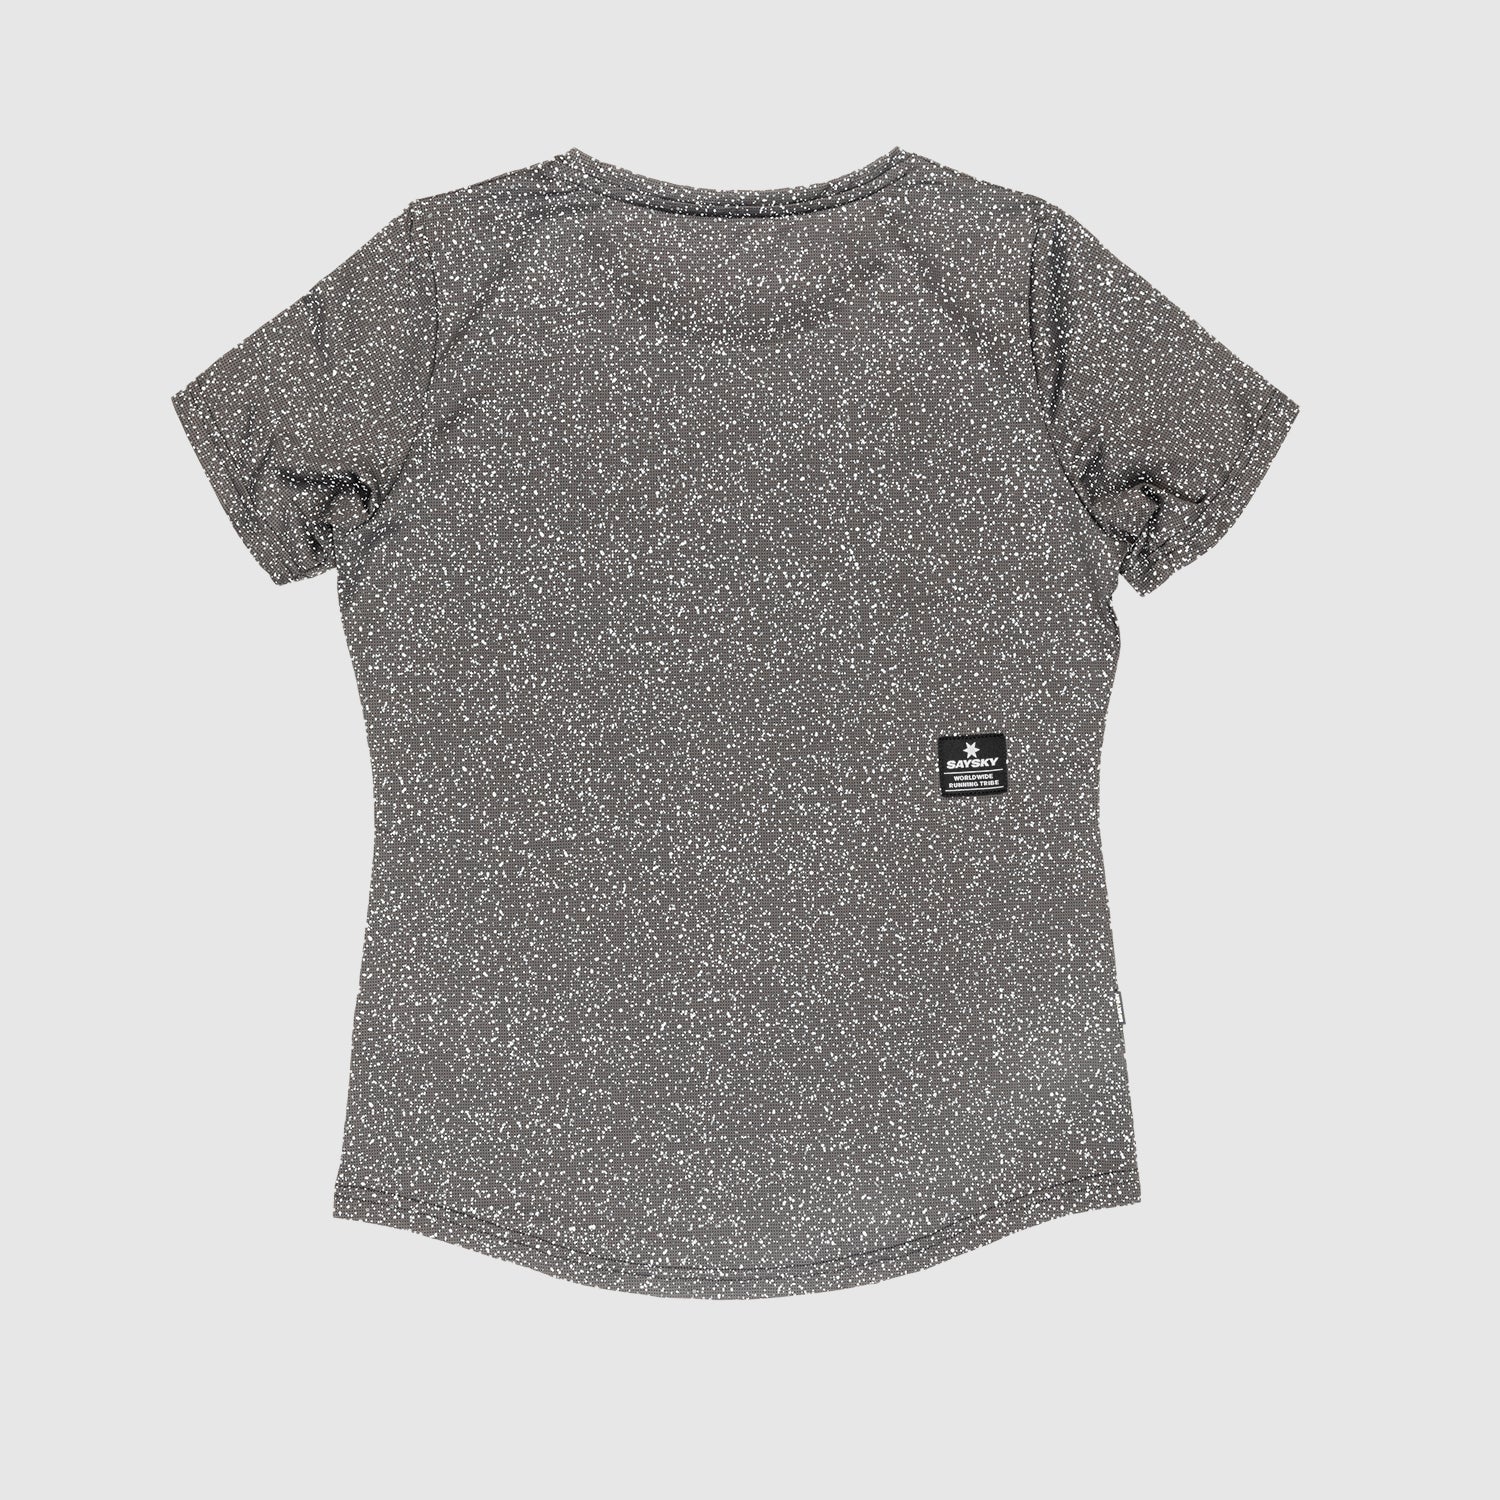 SEISMIC セイスミック レディース 女性 Tシャツ Lサイズ 未使用